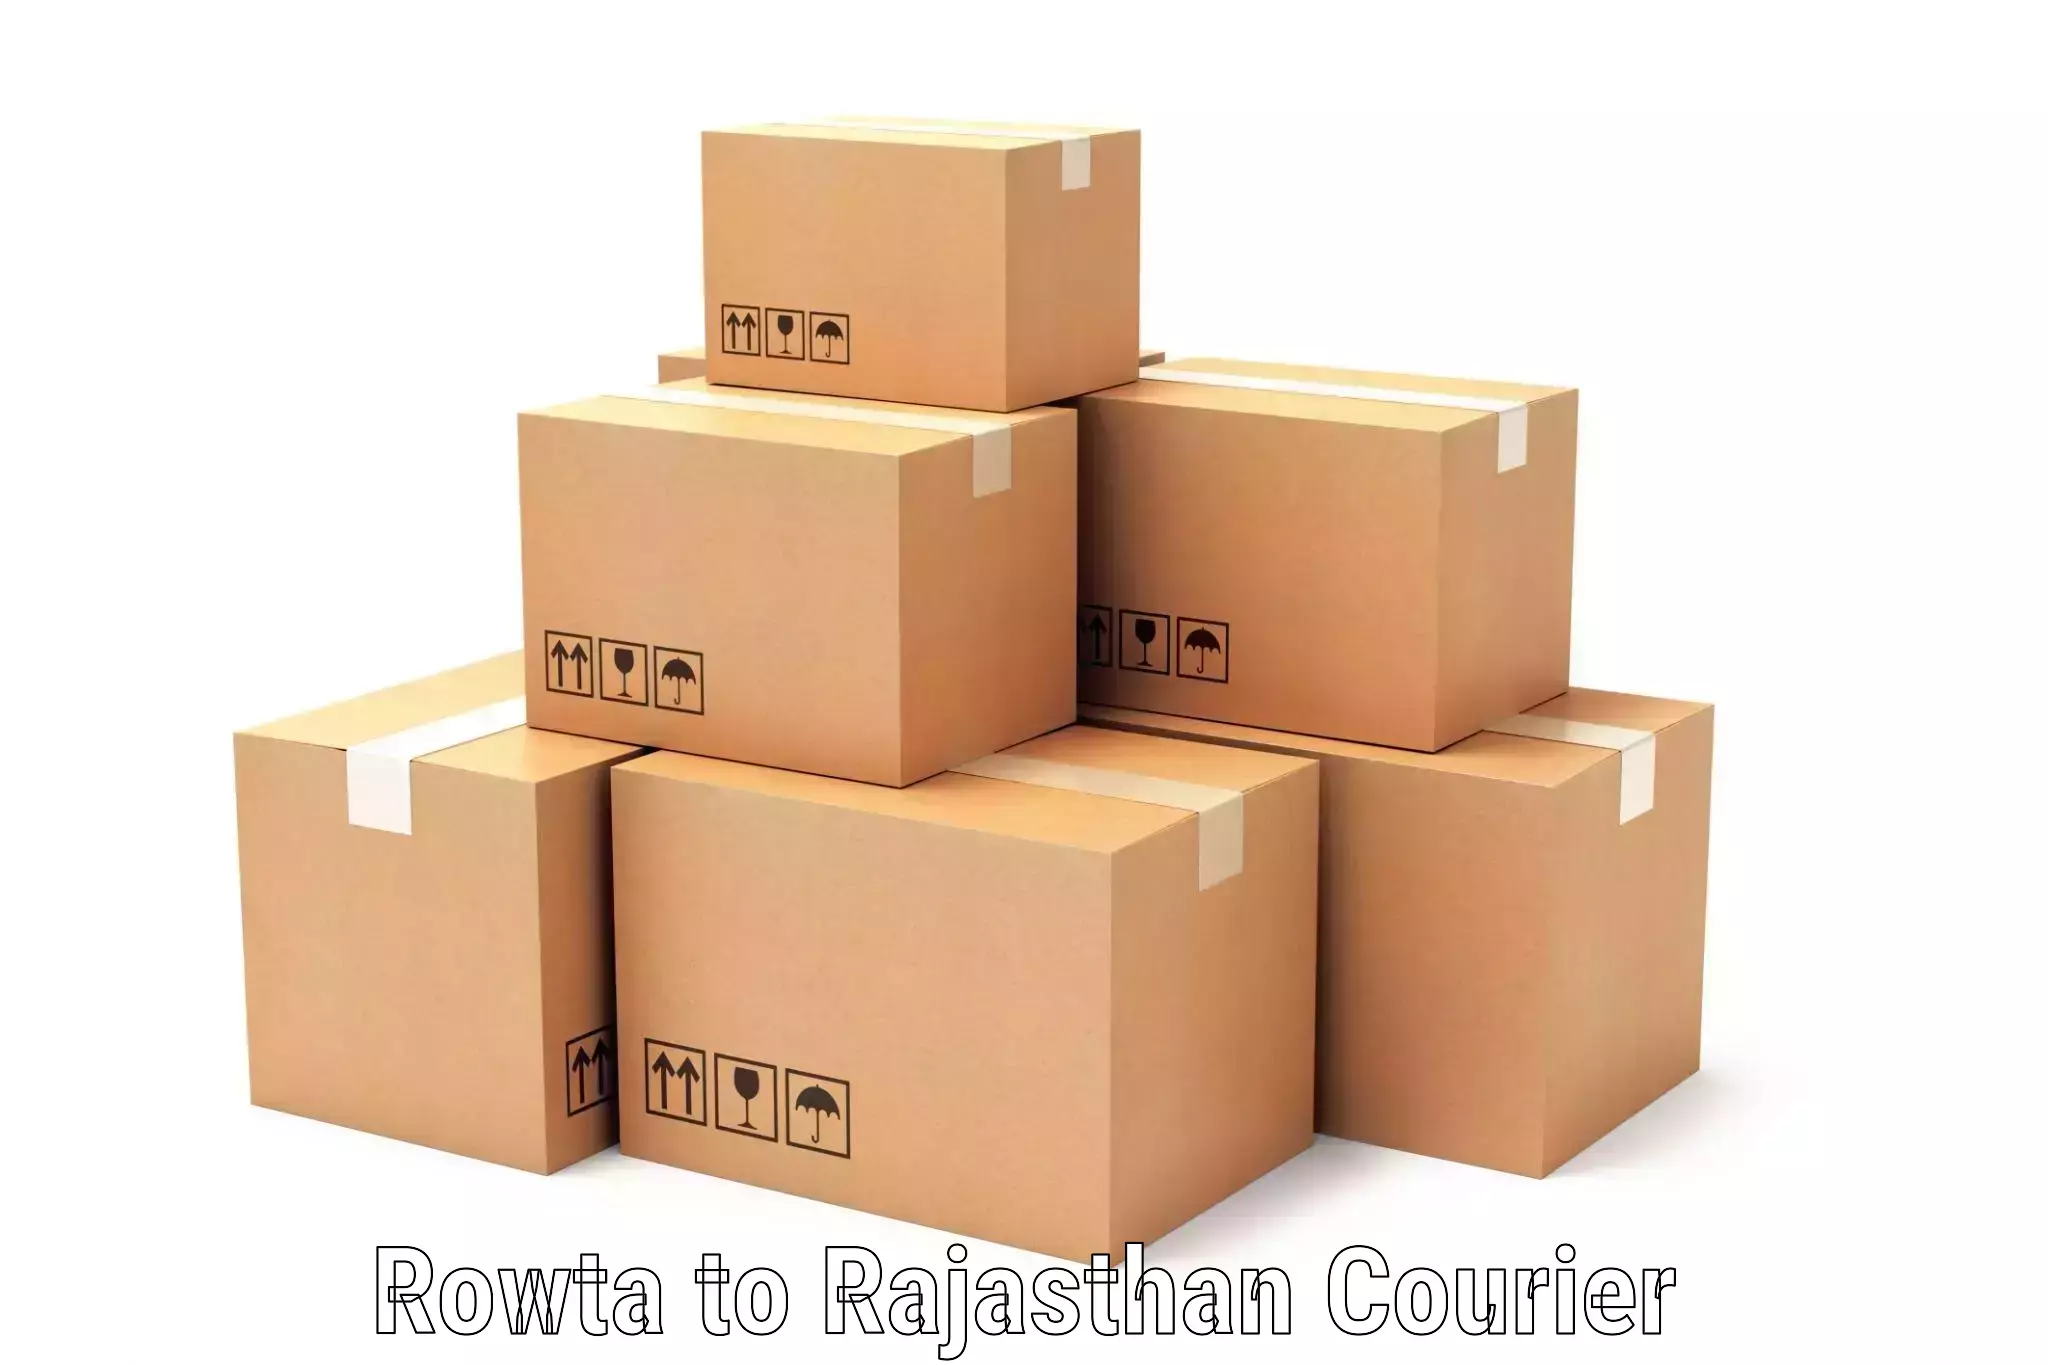 Courier service comparison Rowta to Jaisalmer